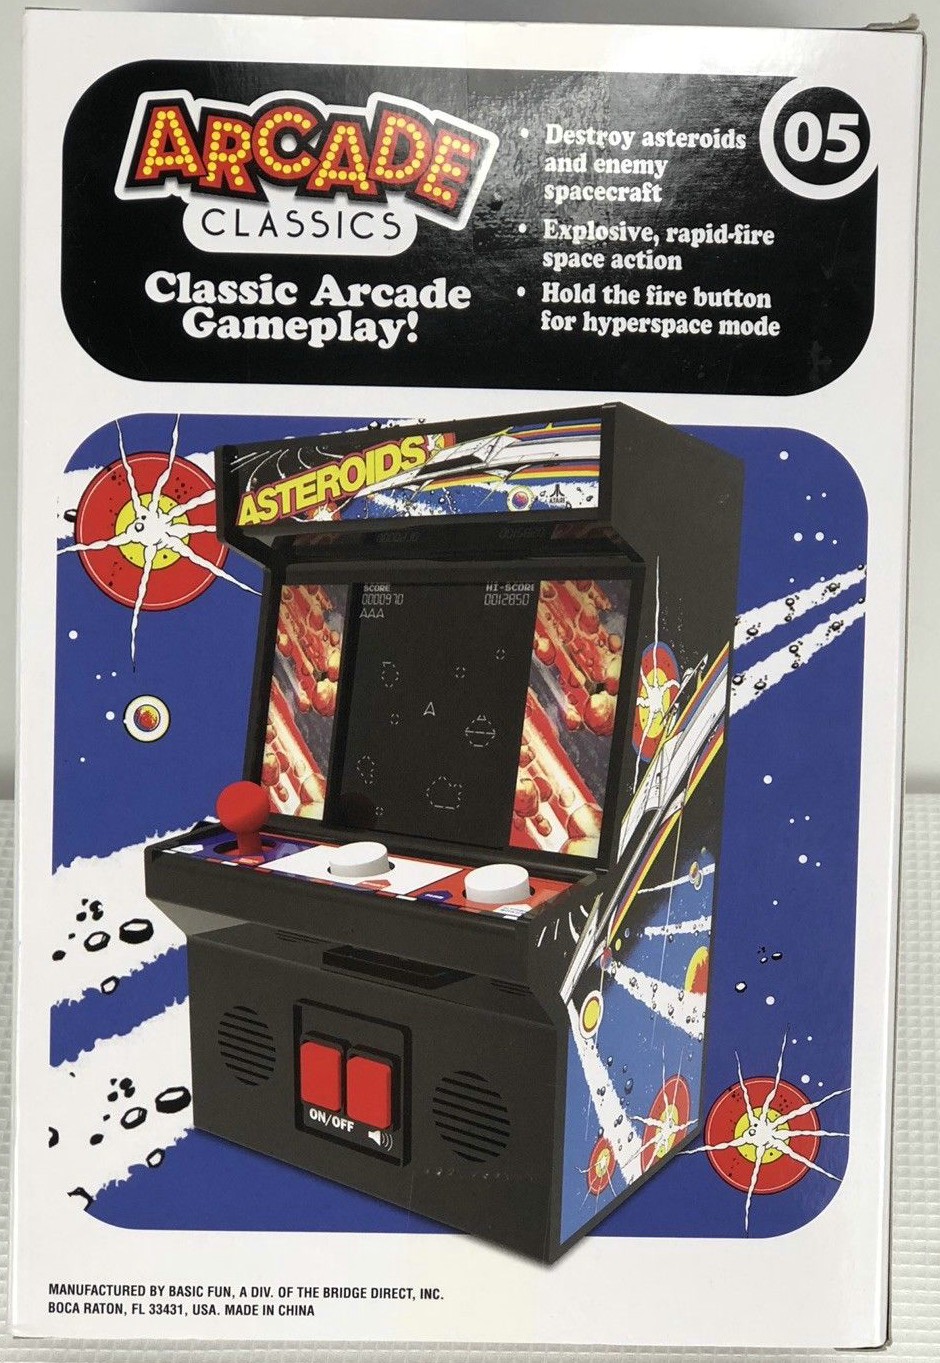 Asteroids Arcade Classics # 05 Handheld Mini Arcade 